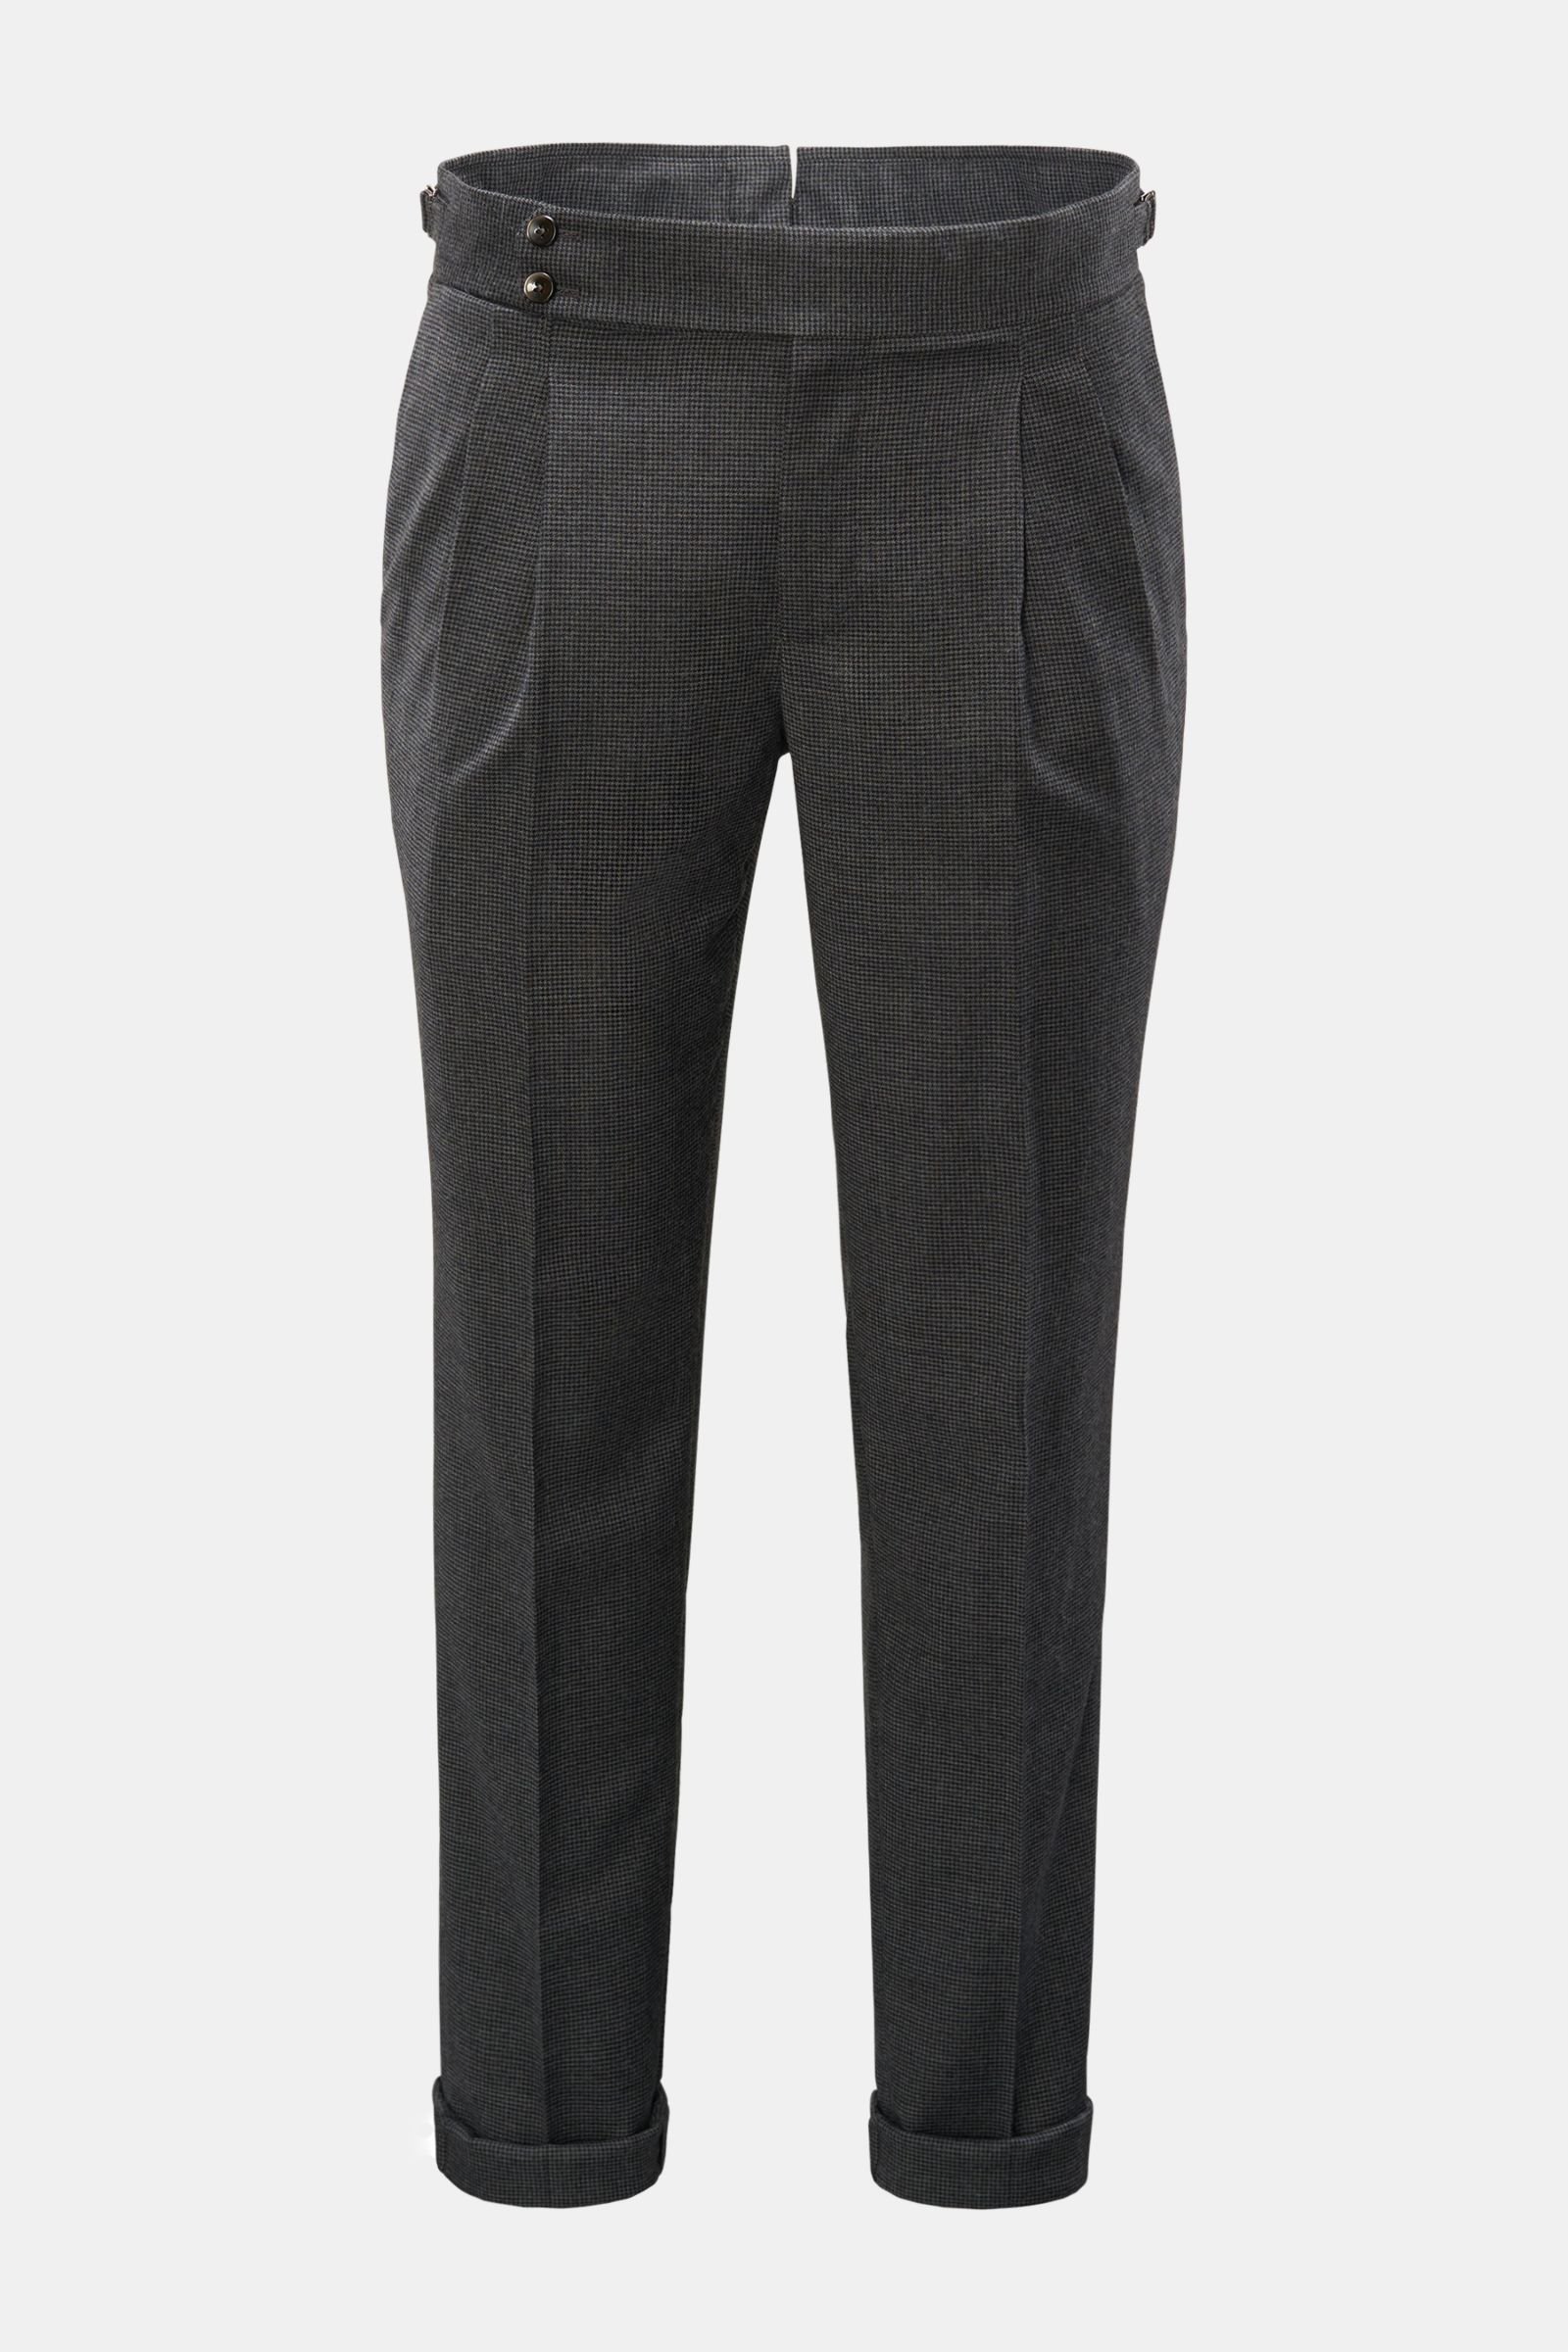 Wool trousers 'Gentleman Fit' dark grey checked